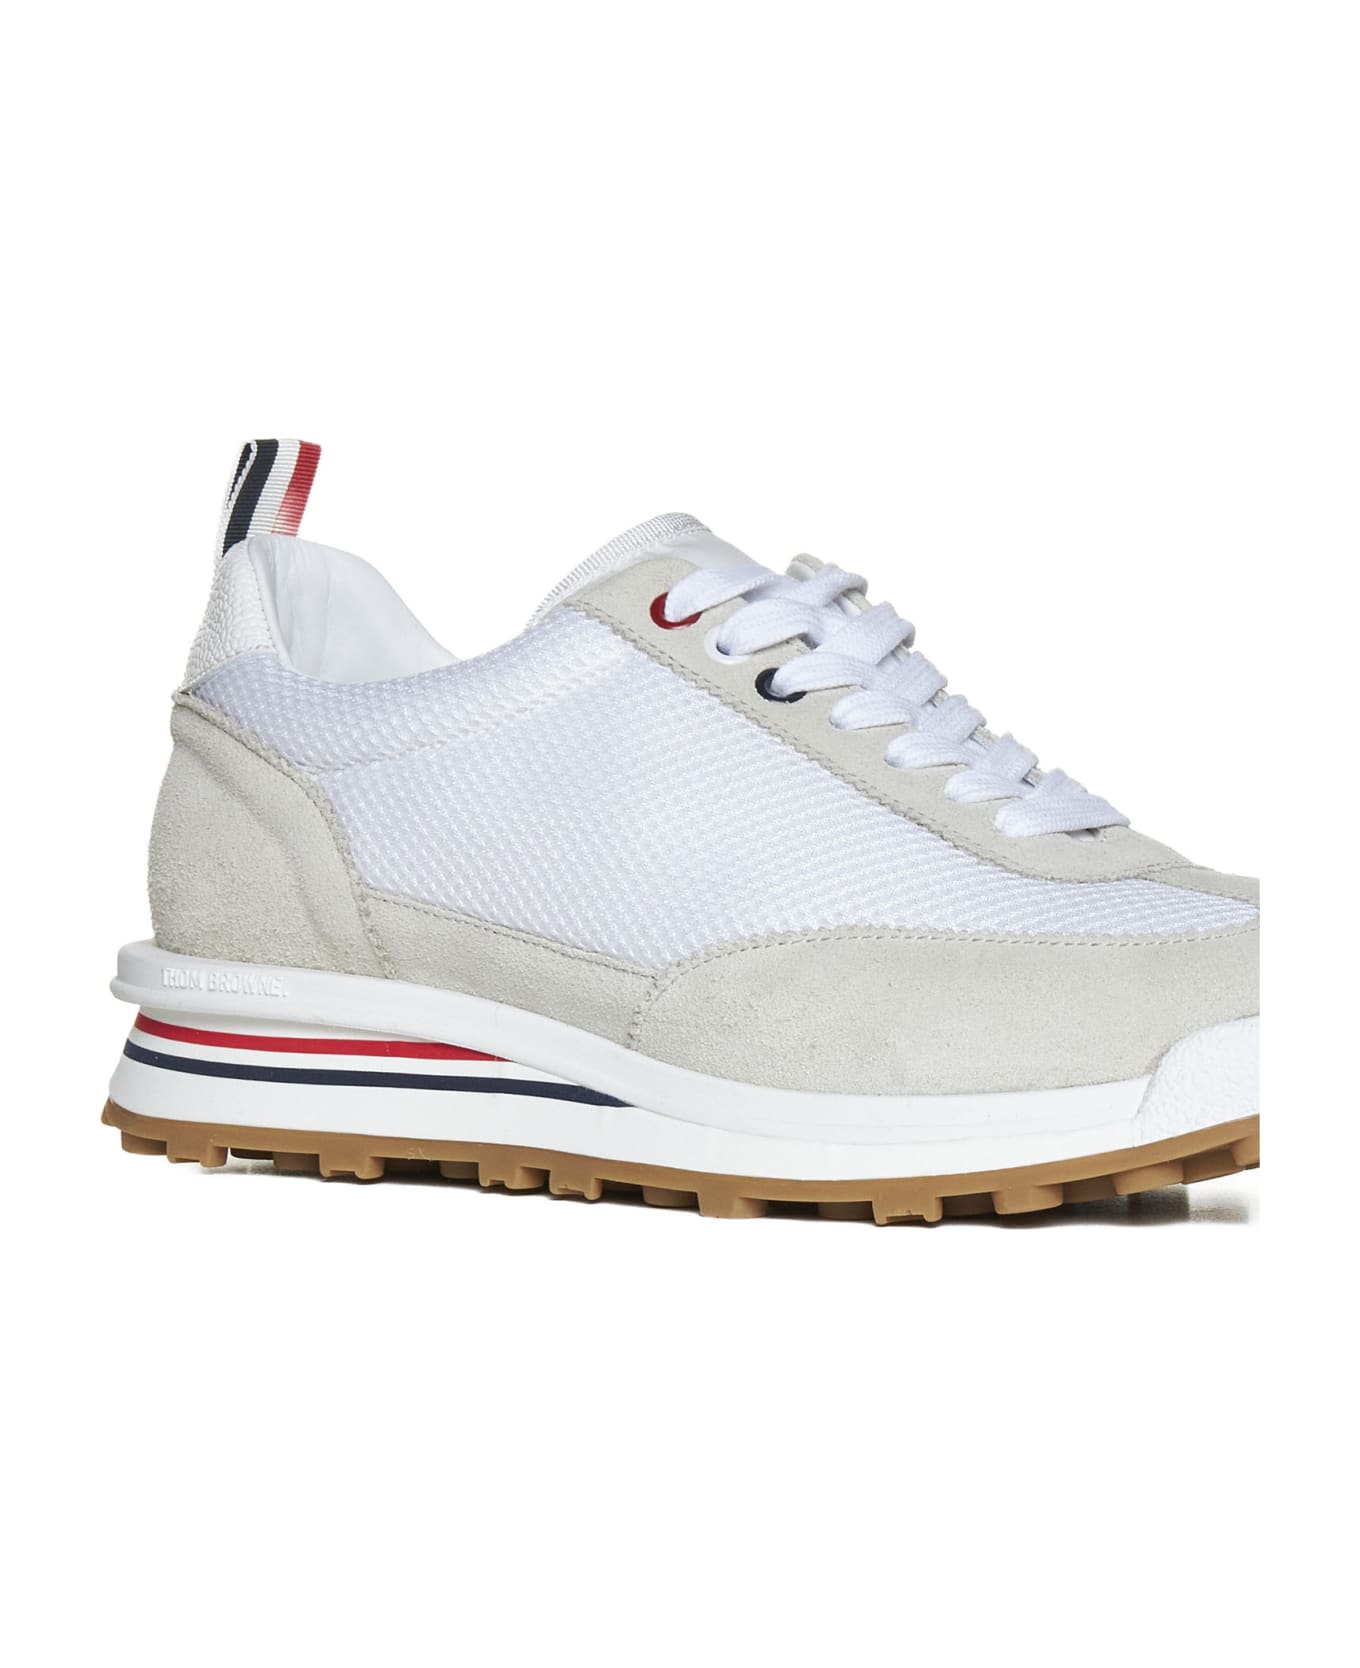 Thom Browne 'teck Runner' Sneakers - White スニーカー